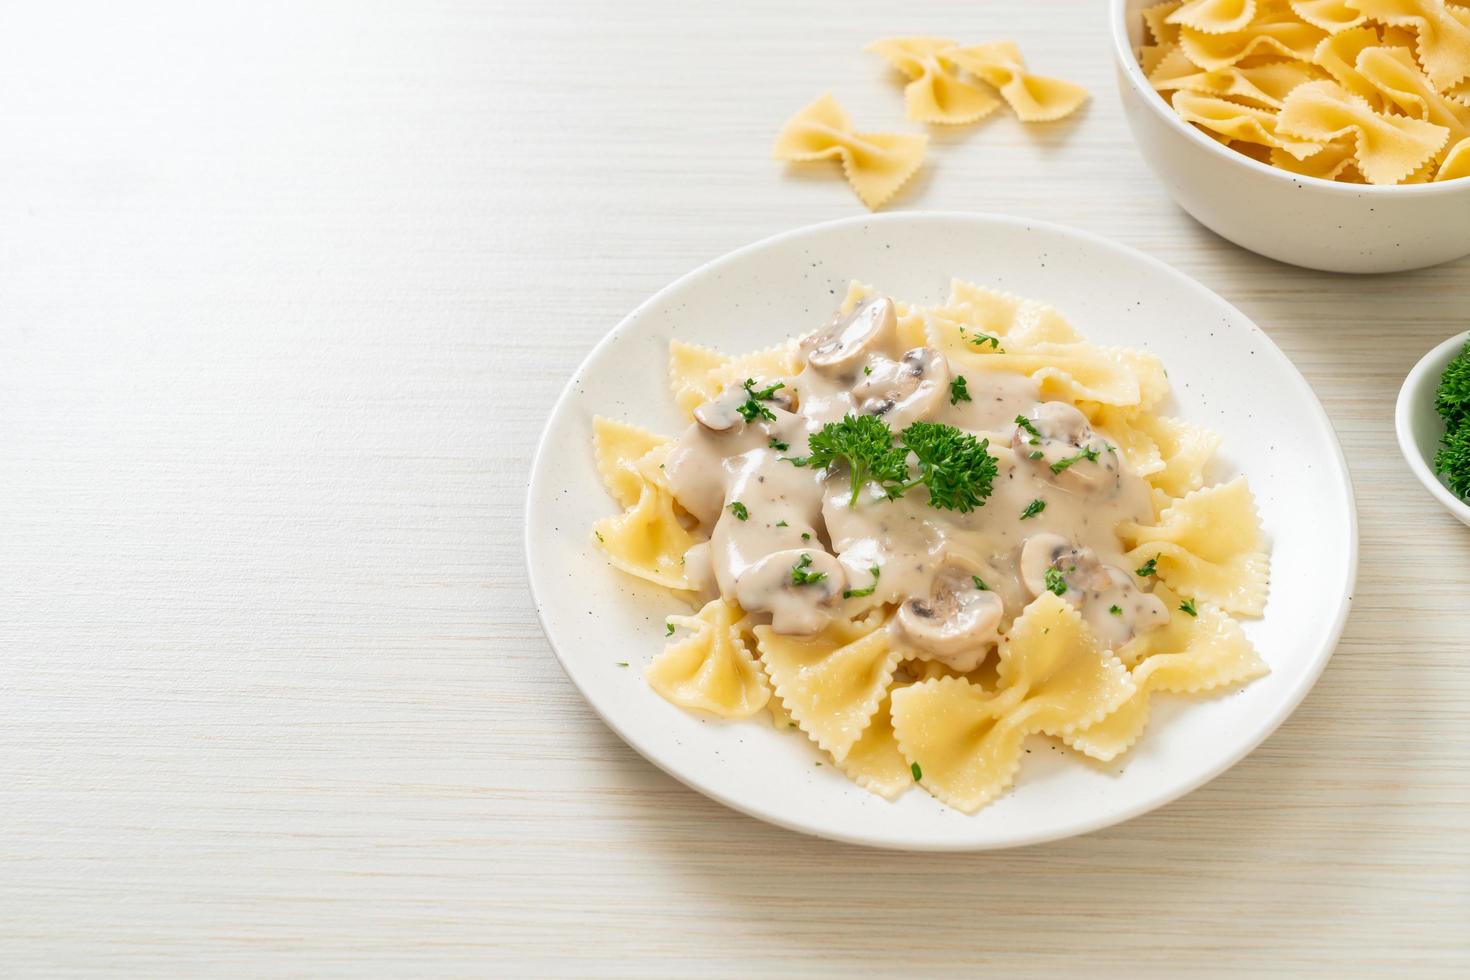 Farfalle-Nudeln mit Champignon-Weiß-Sahne-Sauce - italienische Küche foto